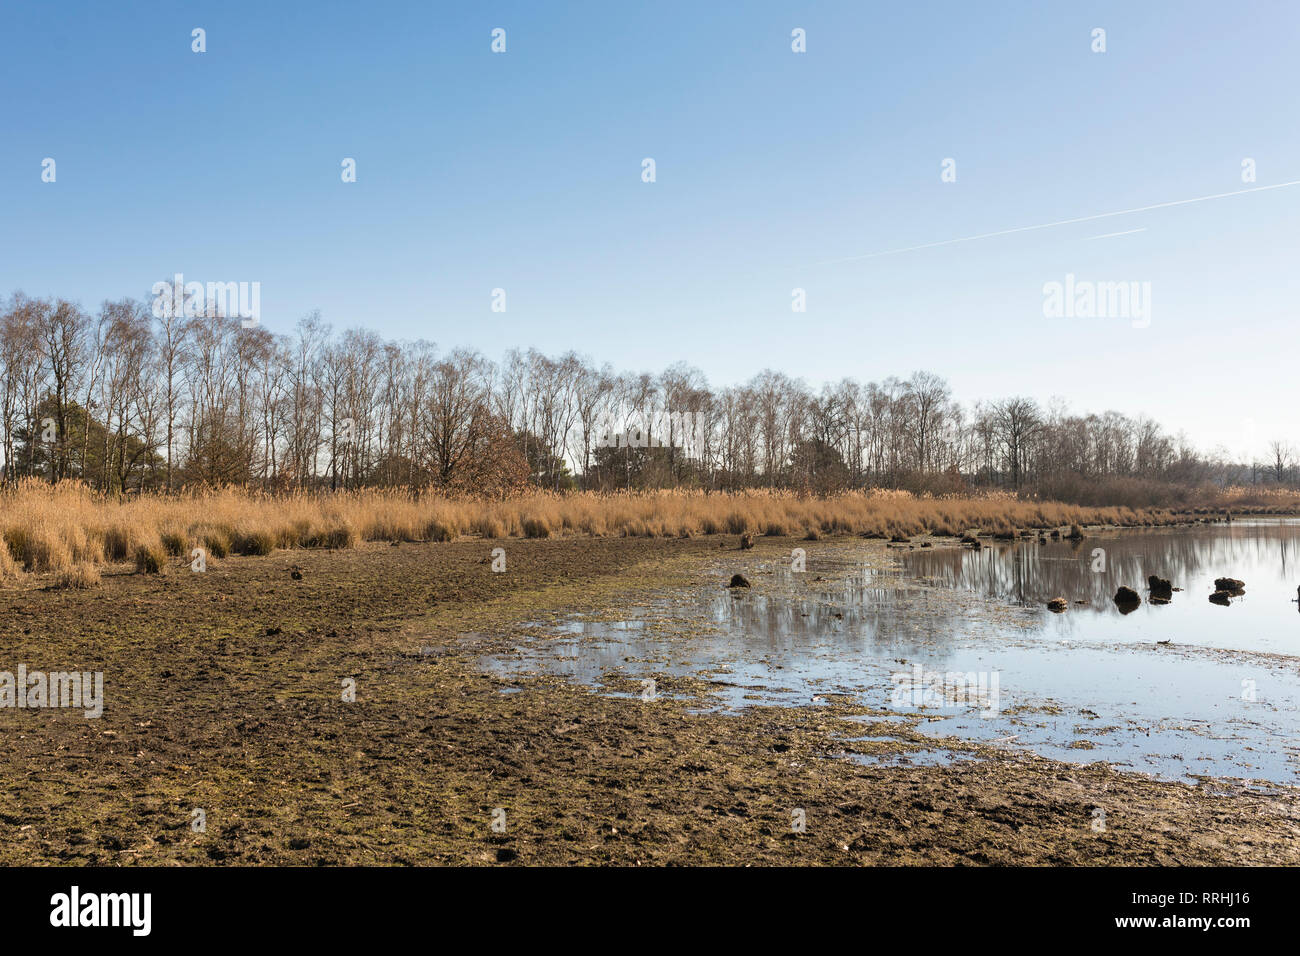 Carenza d'acqua in un lago a Cartierheide in inverno, a causa della siccità estiva del 2018 e di un inverno secco. Paesi Bassi. Foto Stock